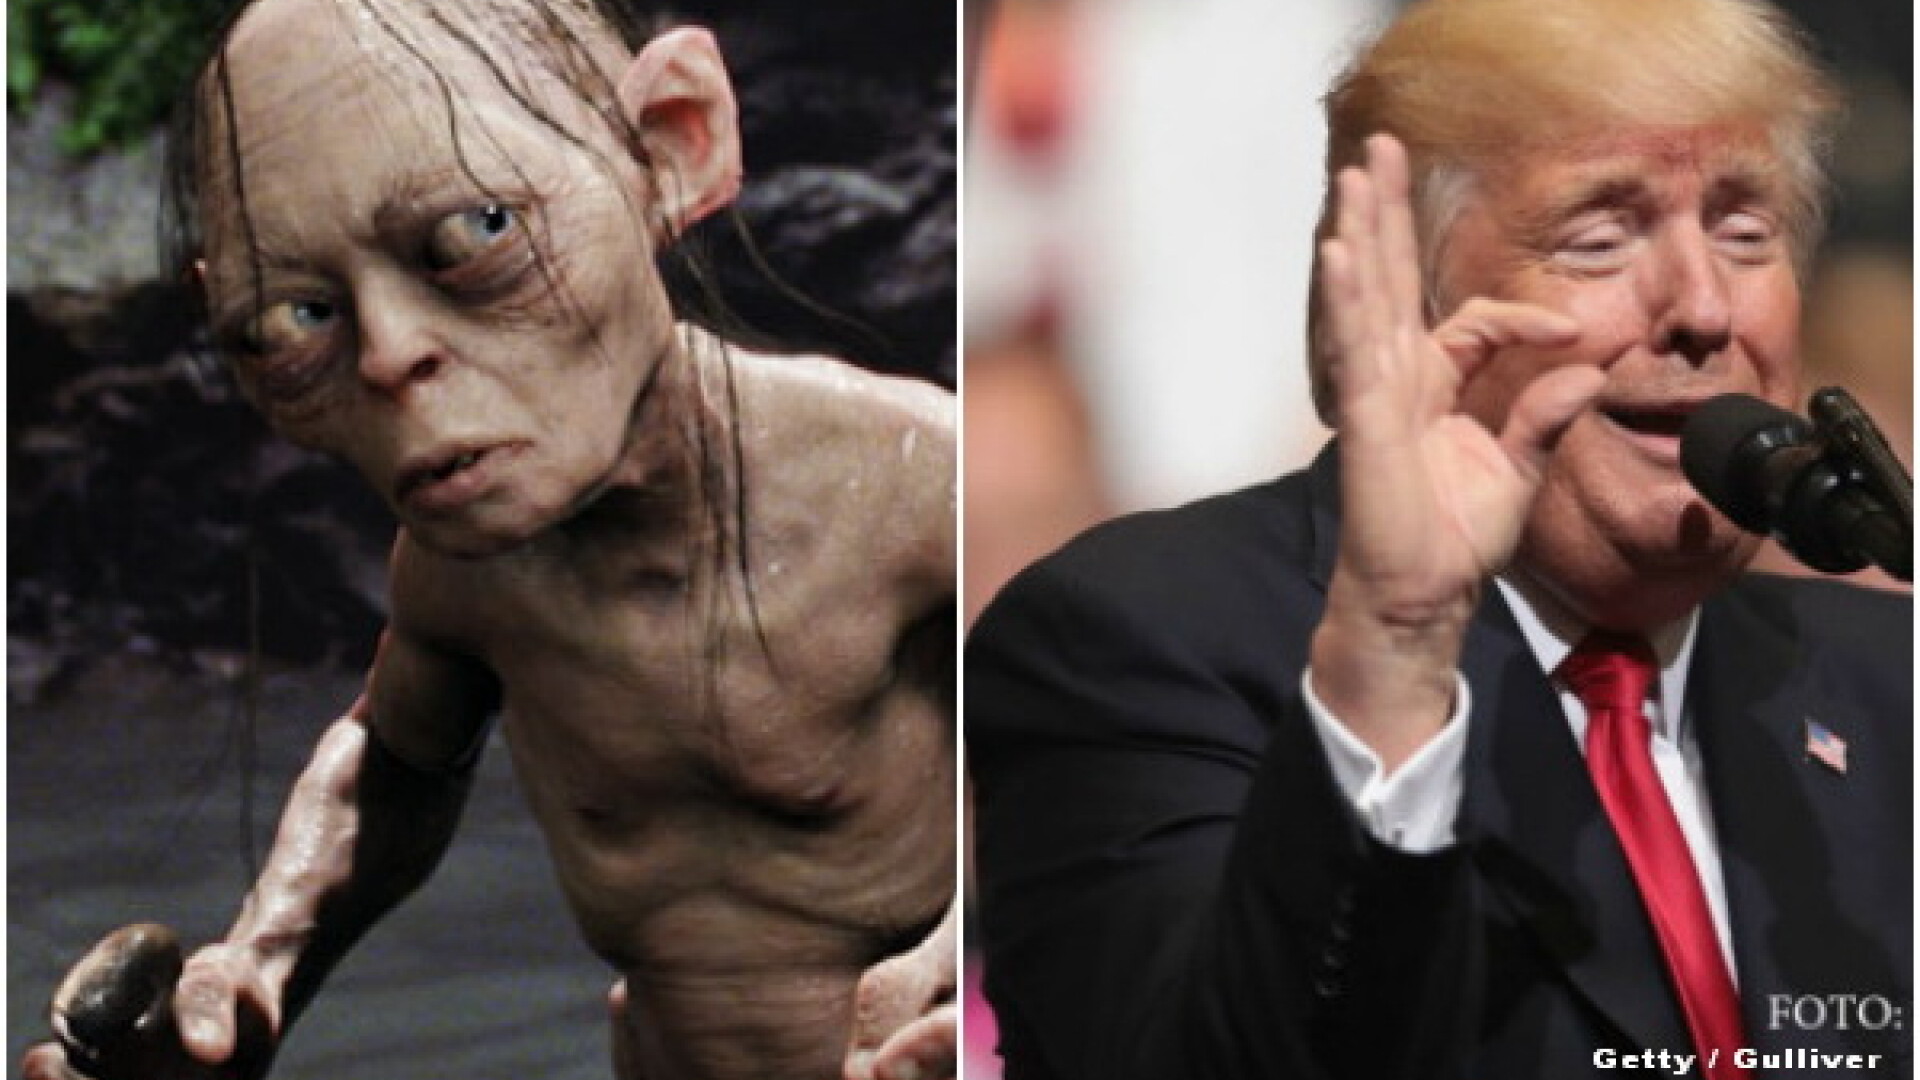 Gollum, Donald Trump